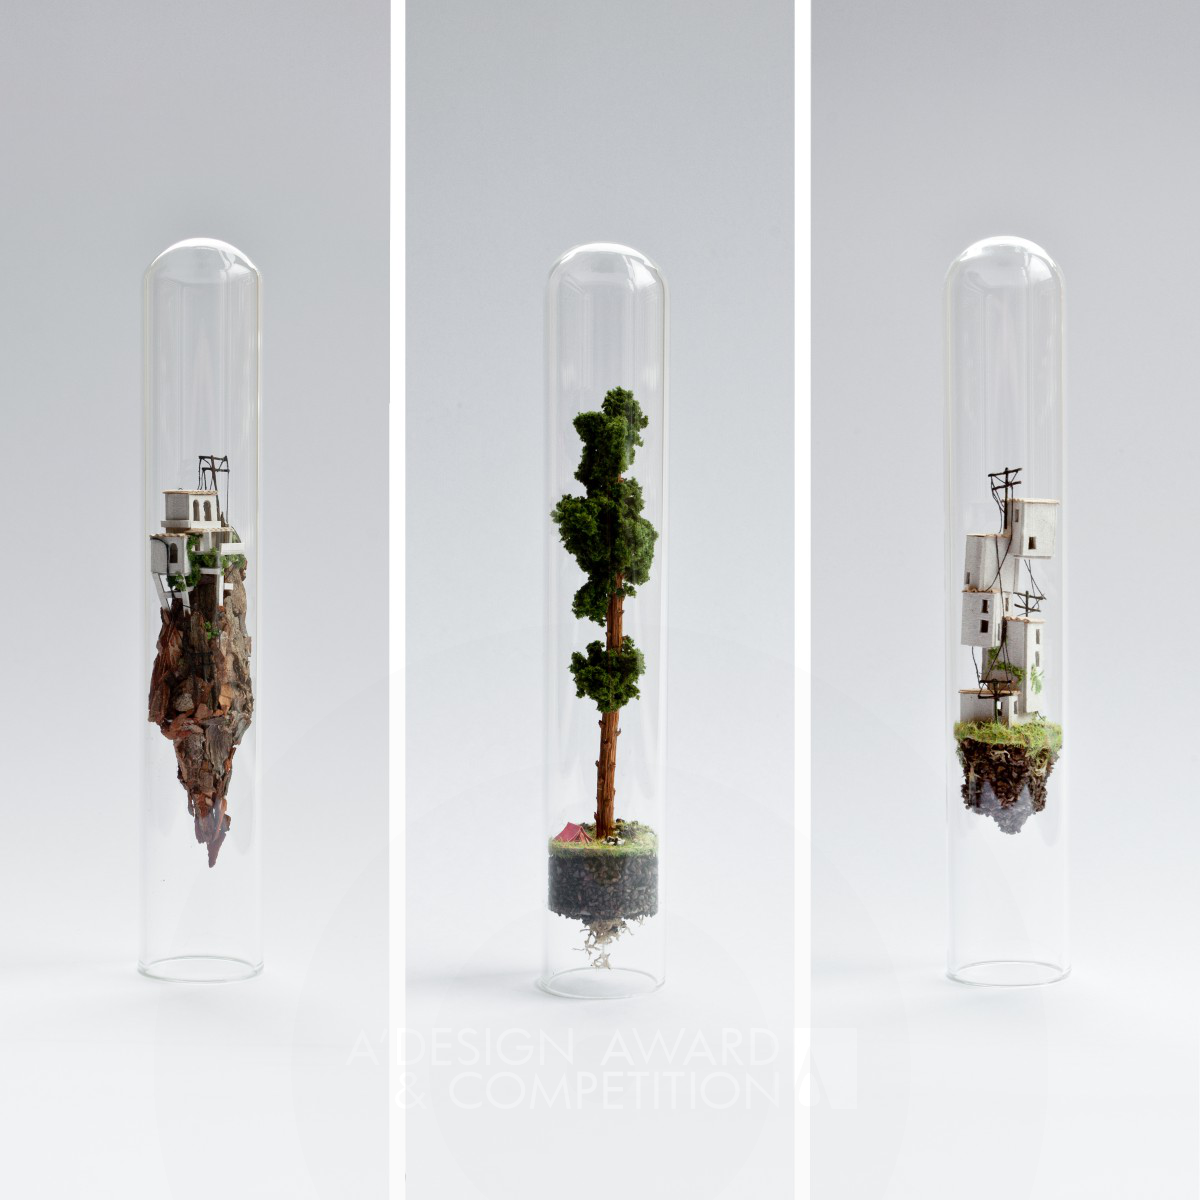 Micro Matter miniature sculptures in glass test tubes by Rosa de Jong